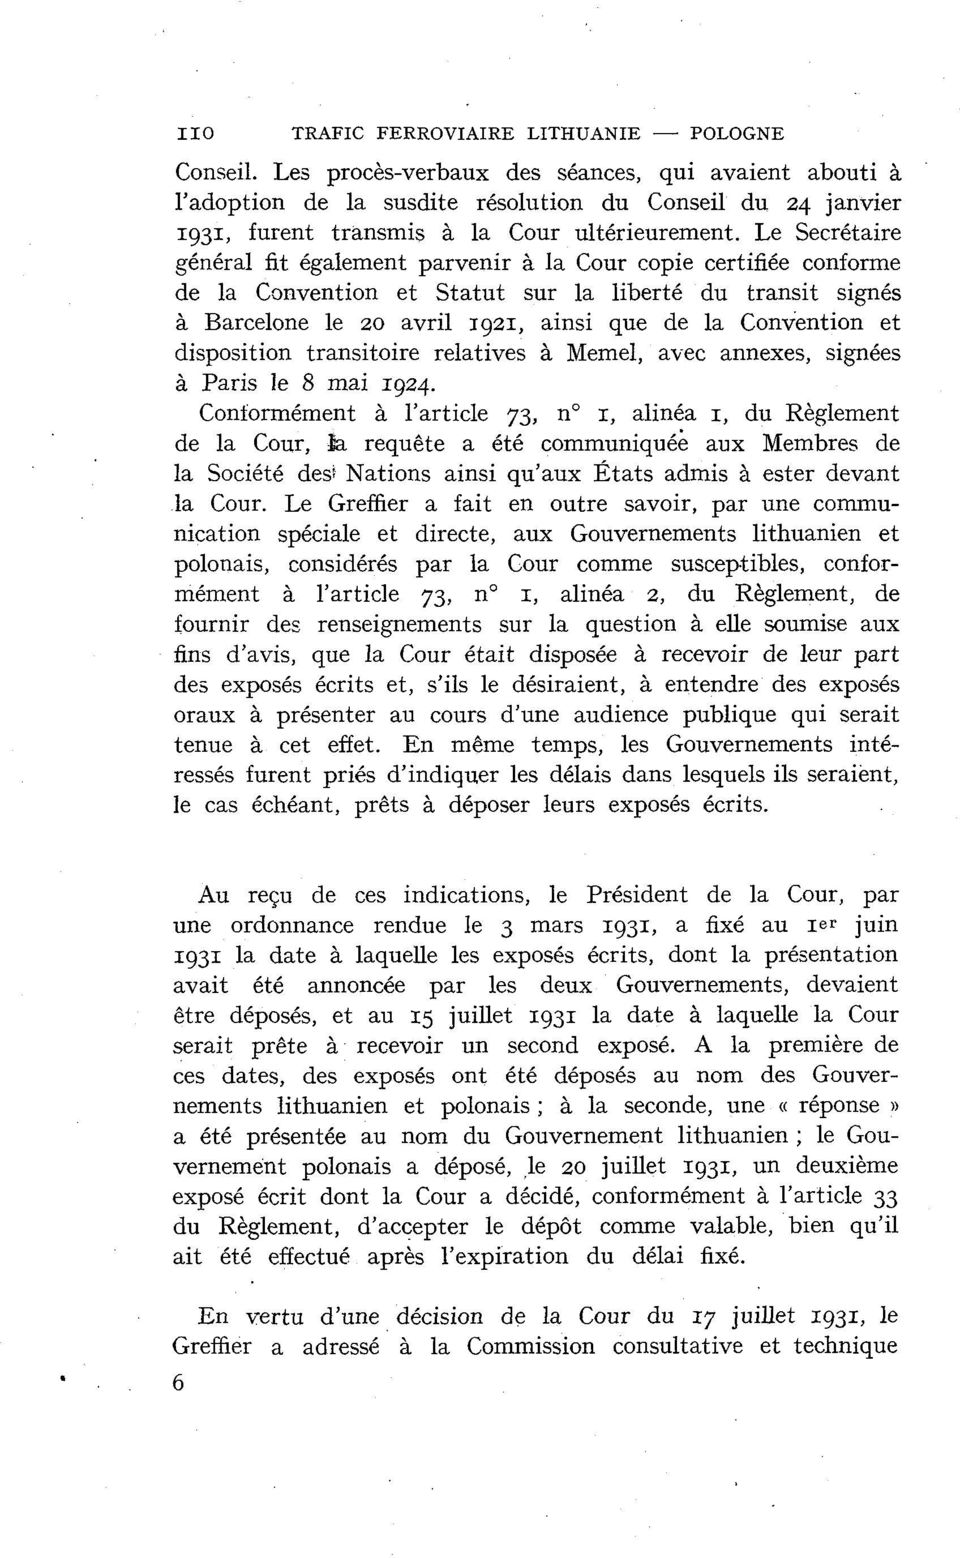 Le Secrétaire général fit également parvenir à la Cour copie certifiée conforme de la Convention et Statut sur la liberté du transit signés à Barcelone le 20 avril 1921, ainsi que de la Convention et